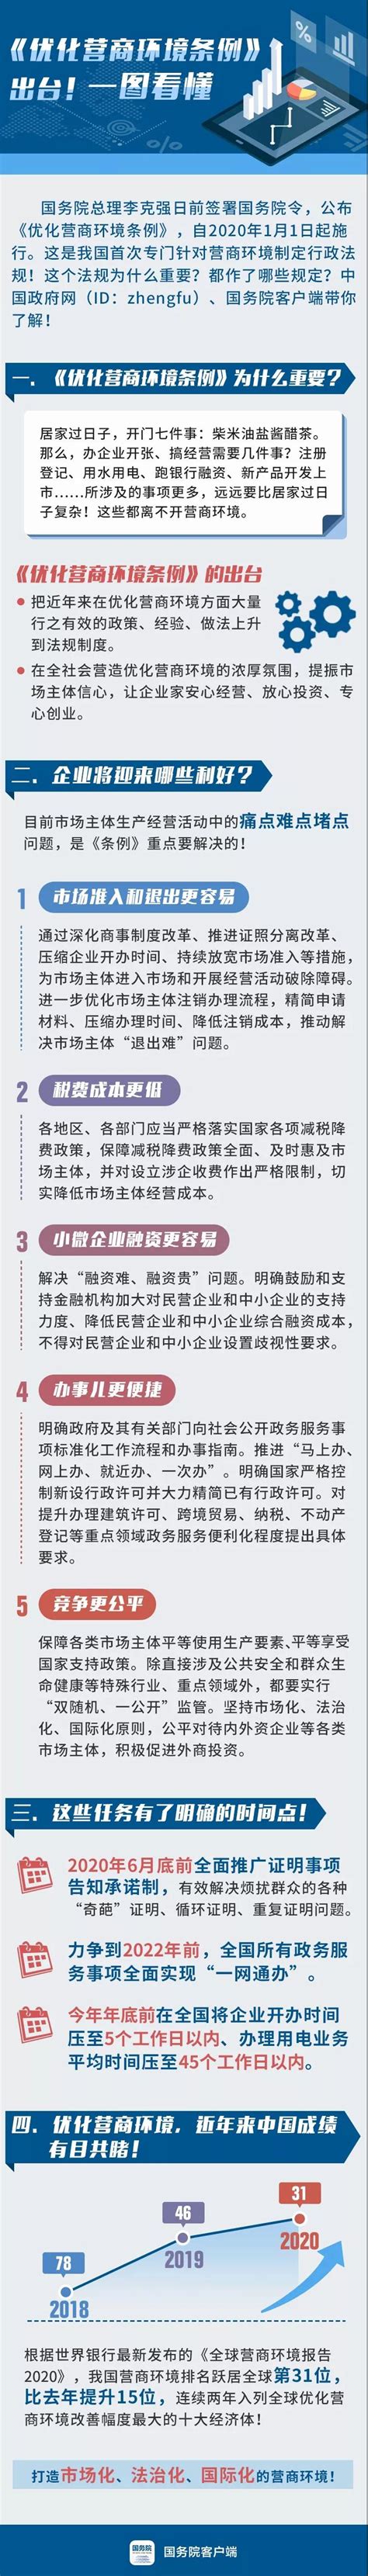 凤县人民政府网站 放管服改革和优化营商环境 一图看懂《陕西省优化营商环境条例》